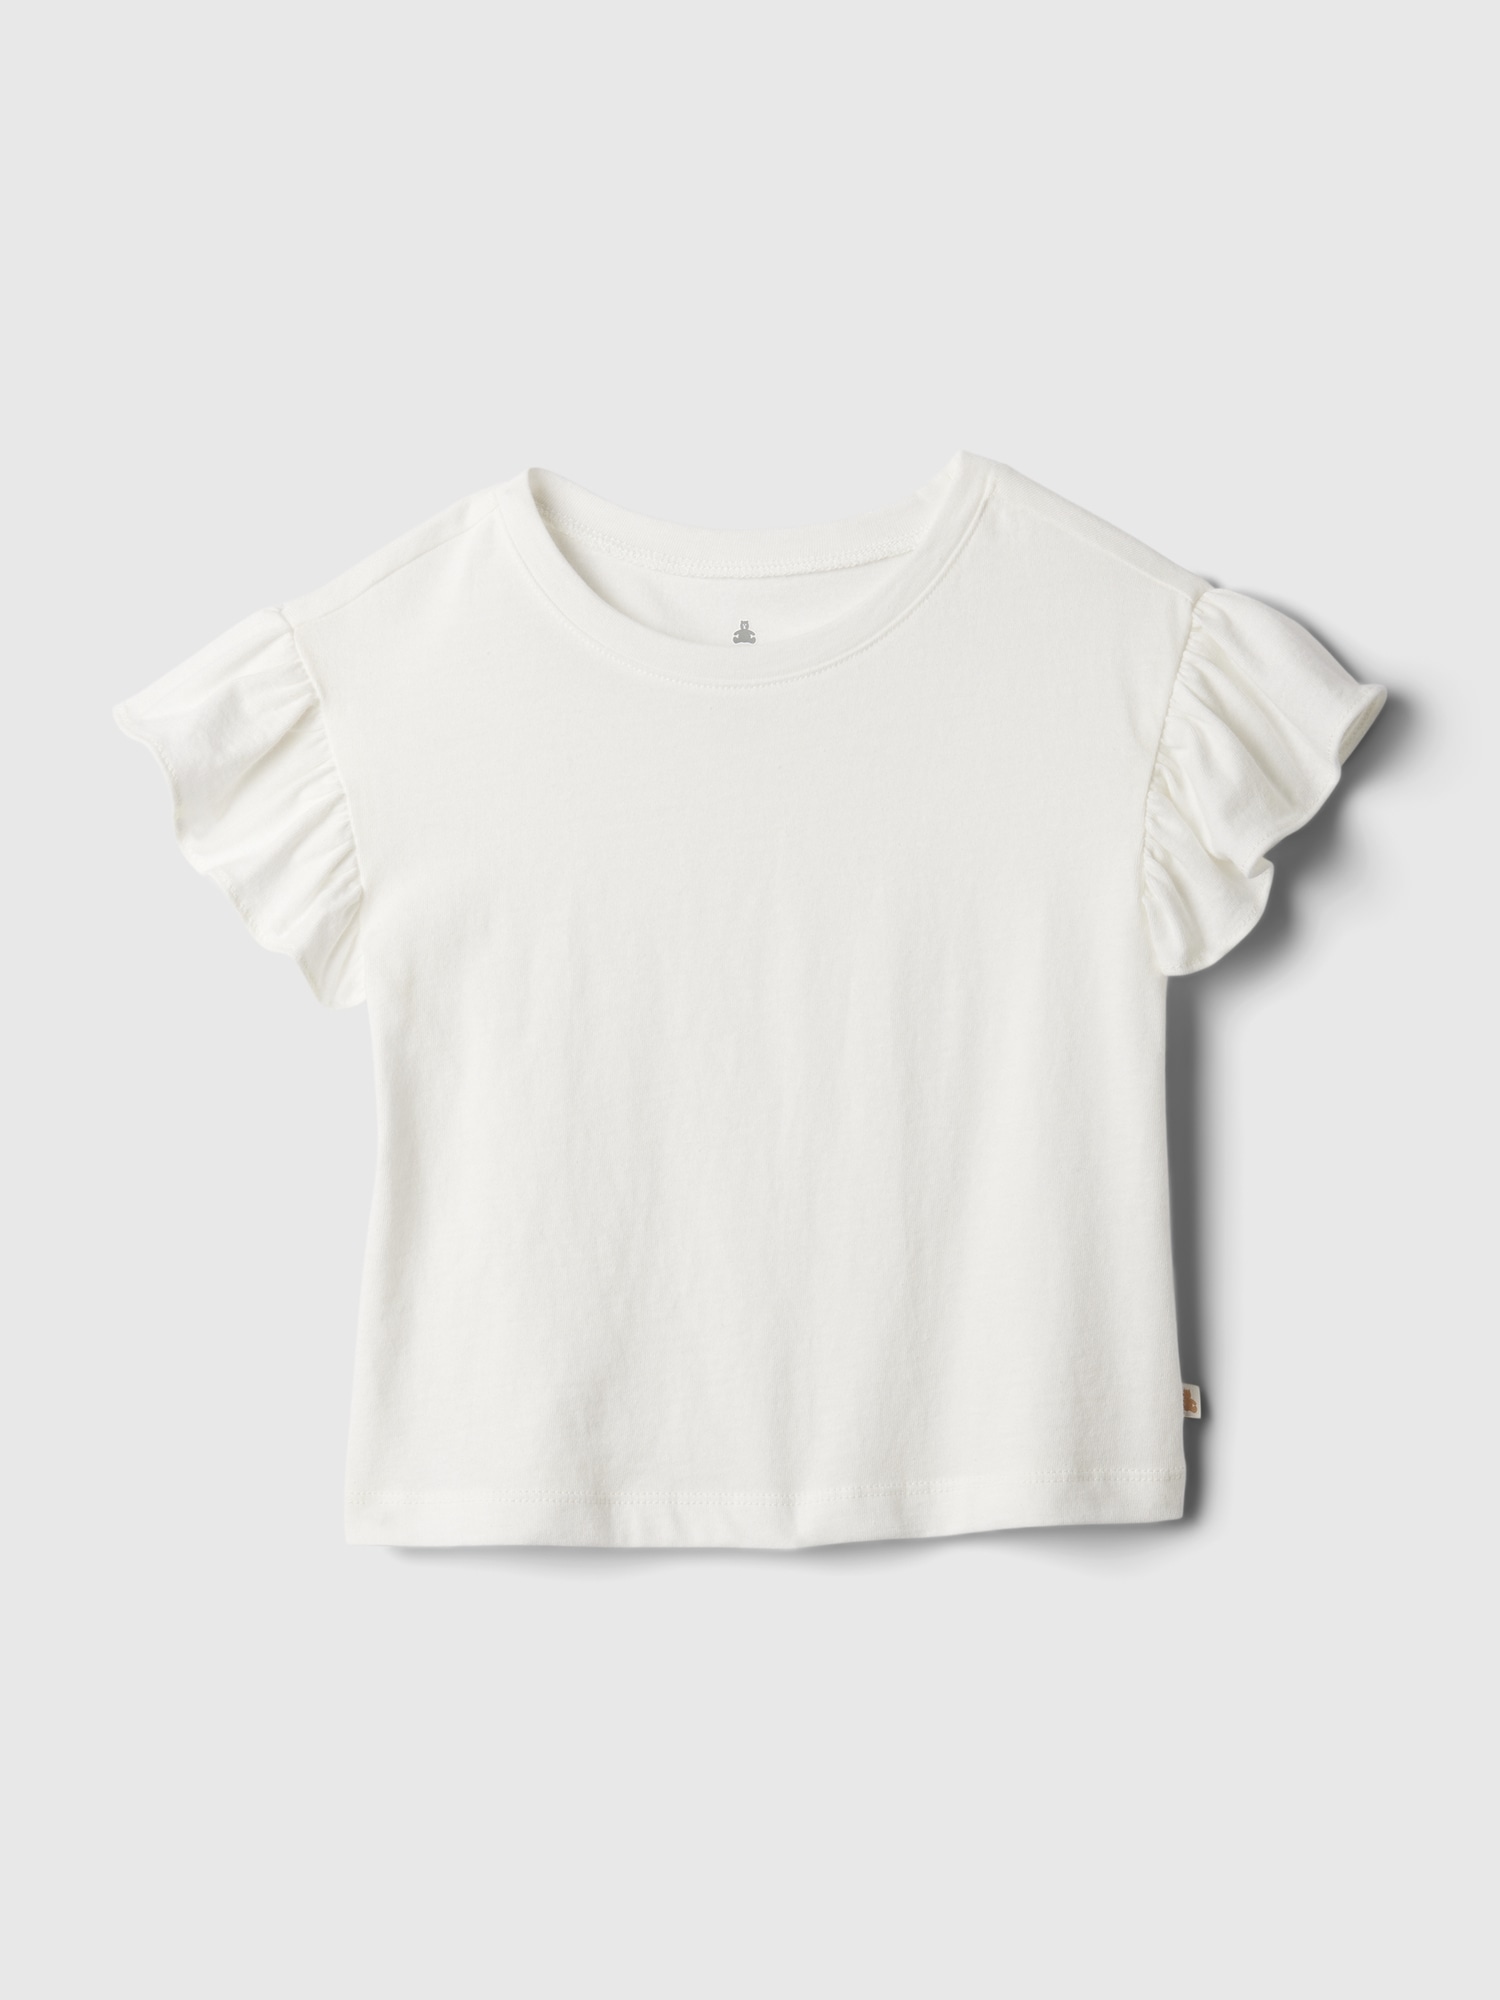 babyGap Mix and Match Flutter T-Shirt